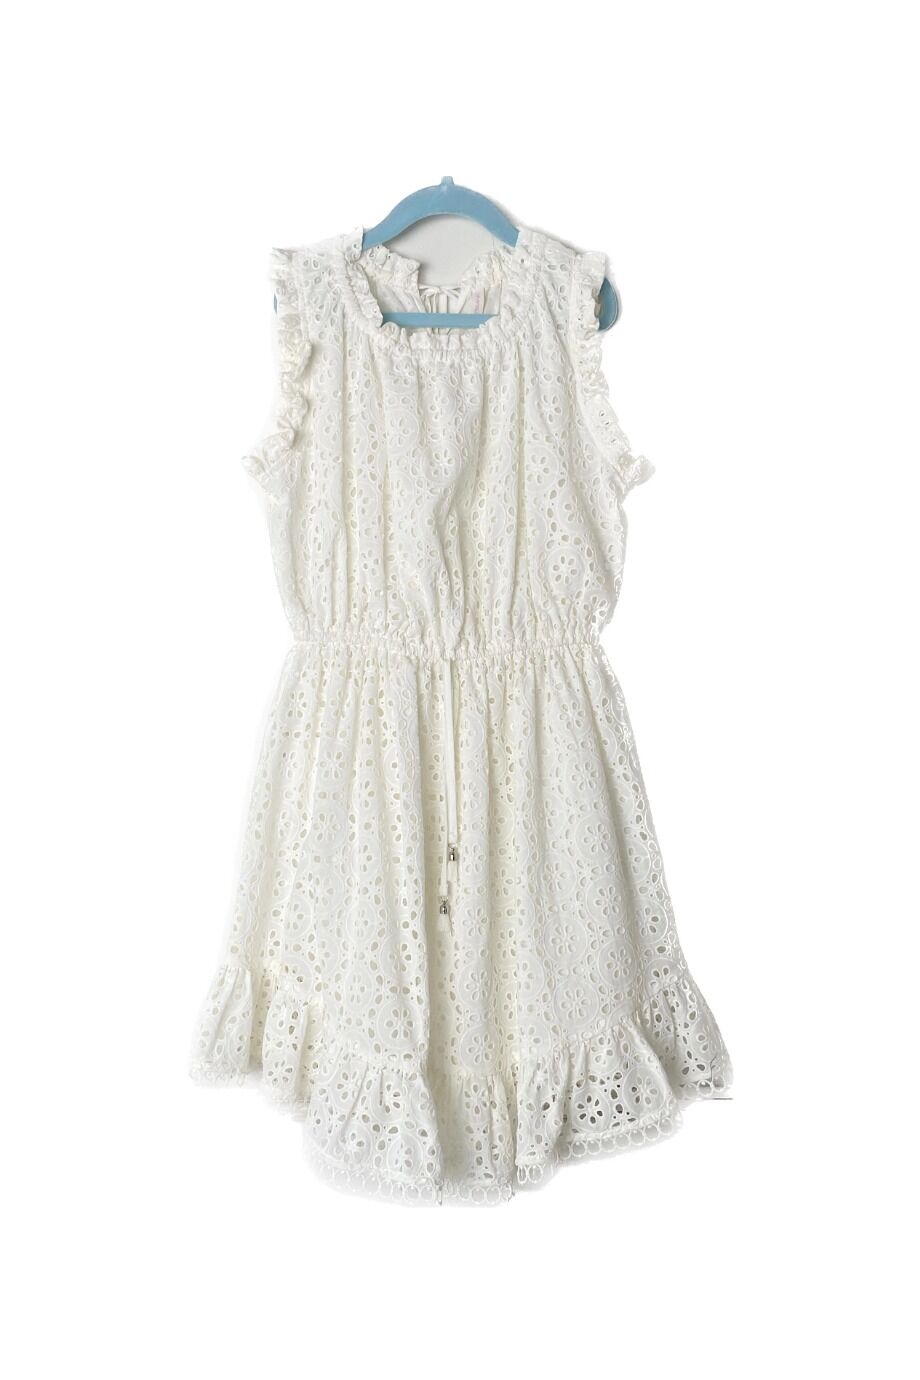 image 1 Детское платье ришелье белого цвета